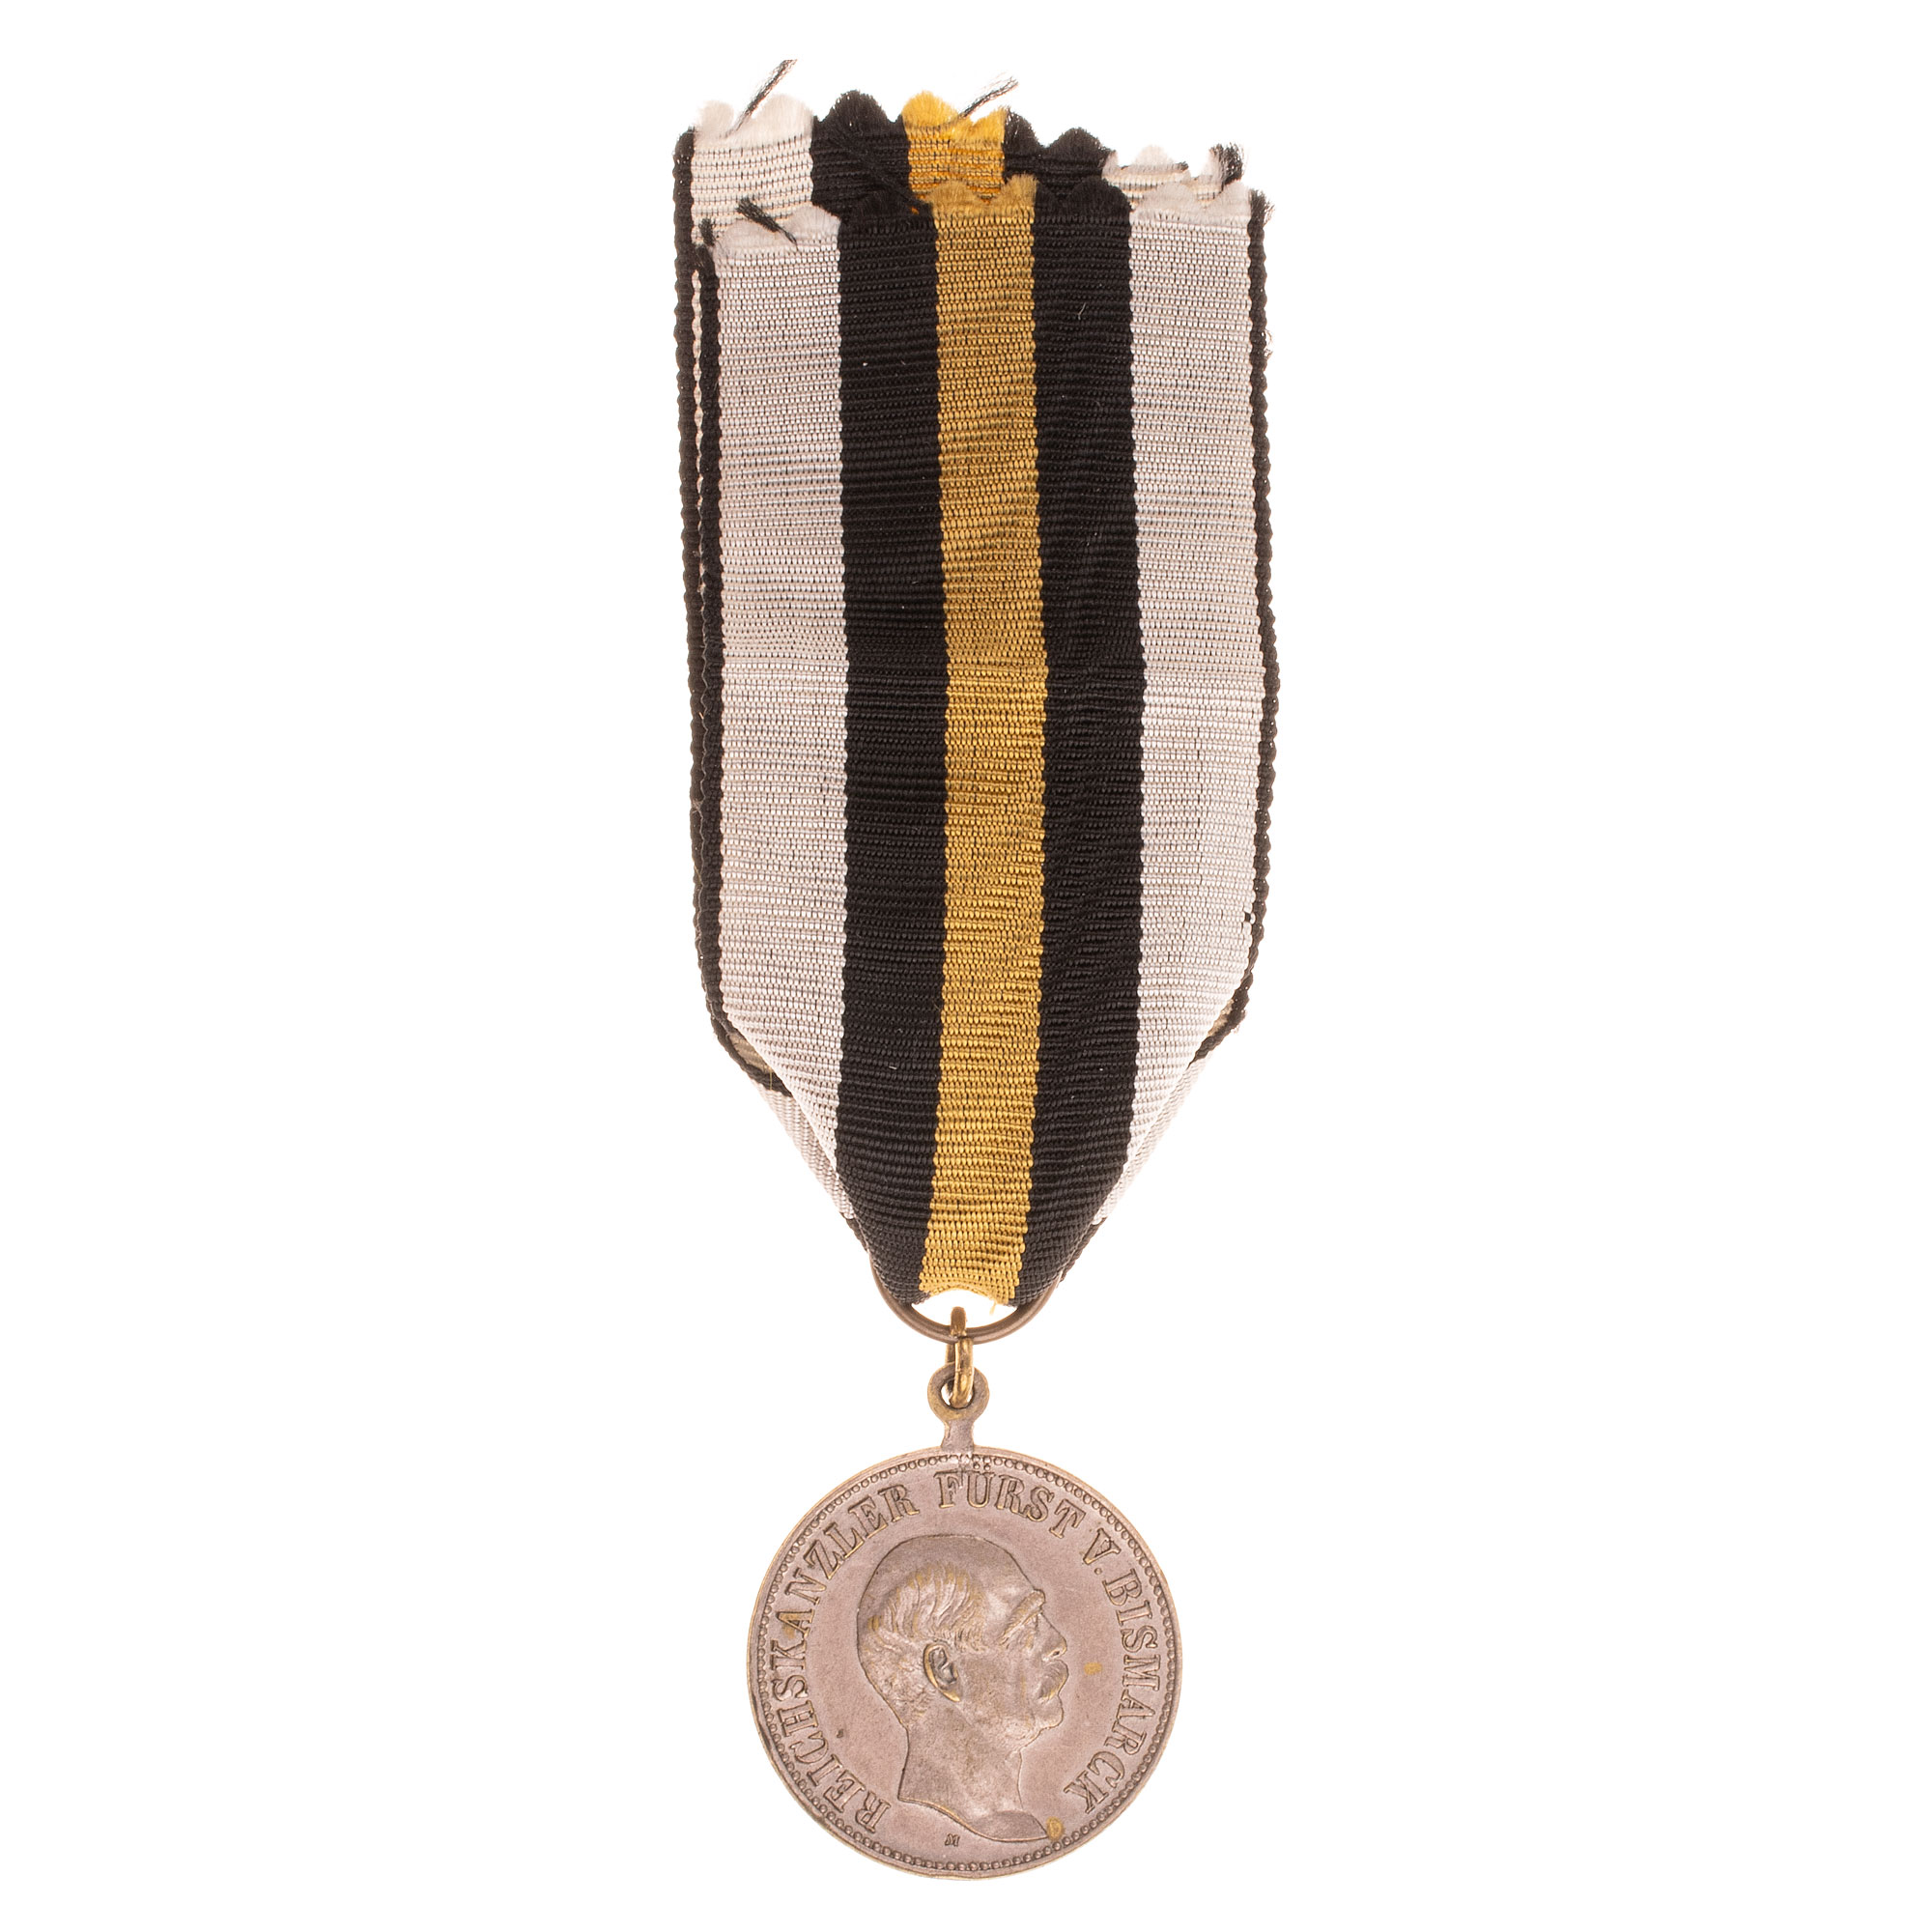 Германия. Медаль (жетон) в память 80-летия рейхсканцлера Германии Отто фон Бисмарка 1815-1898 гг.